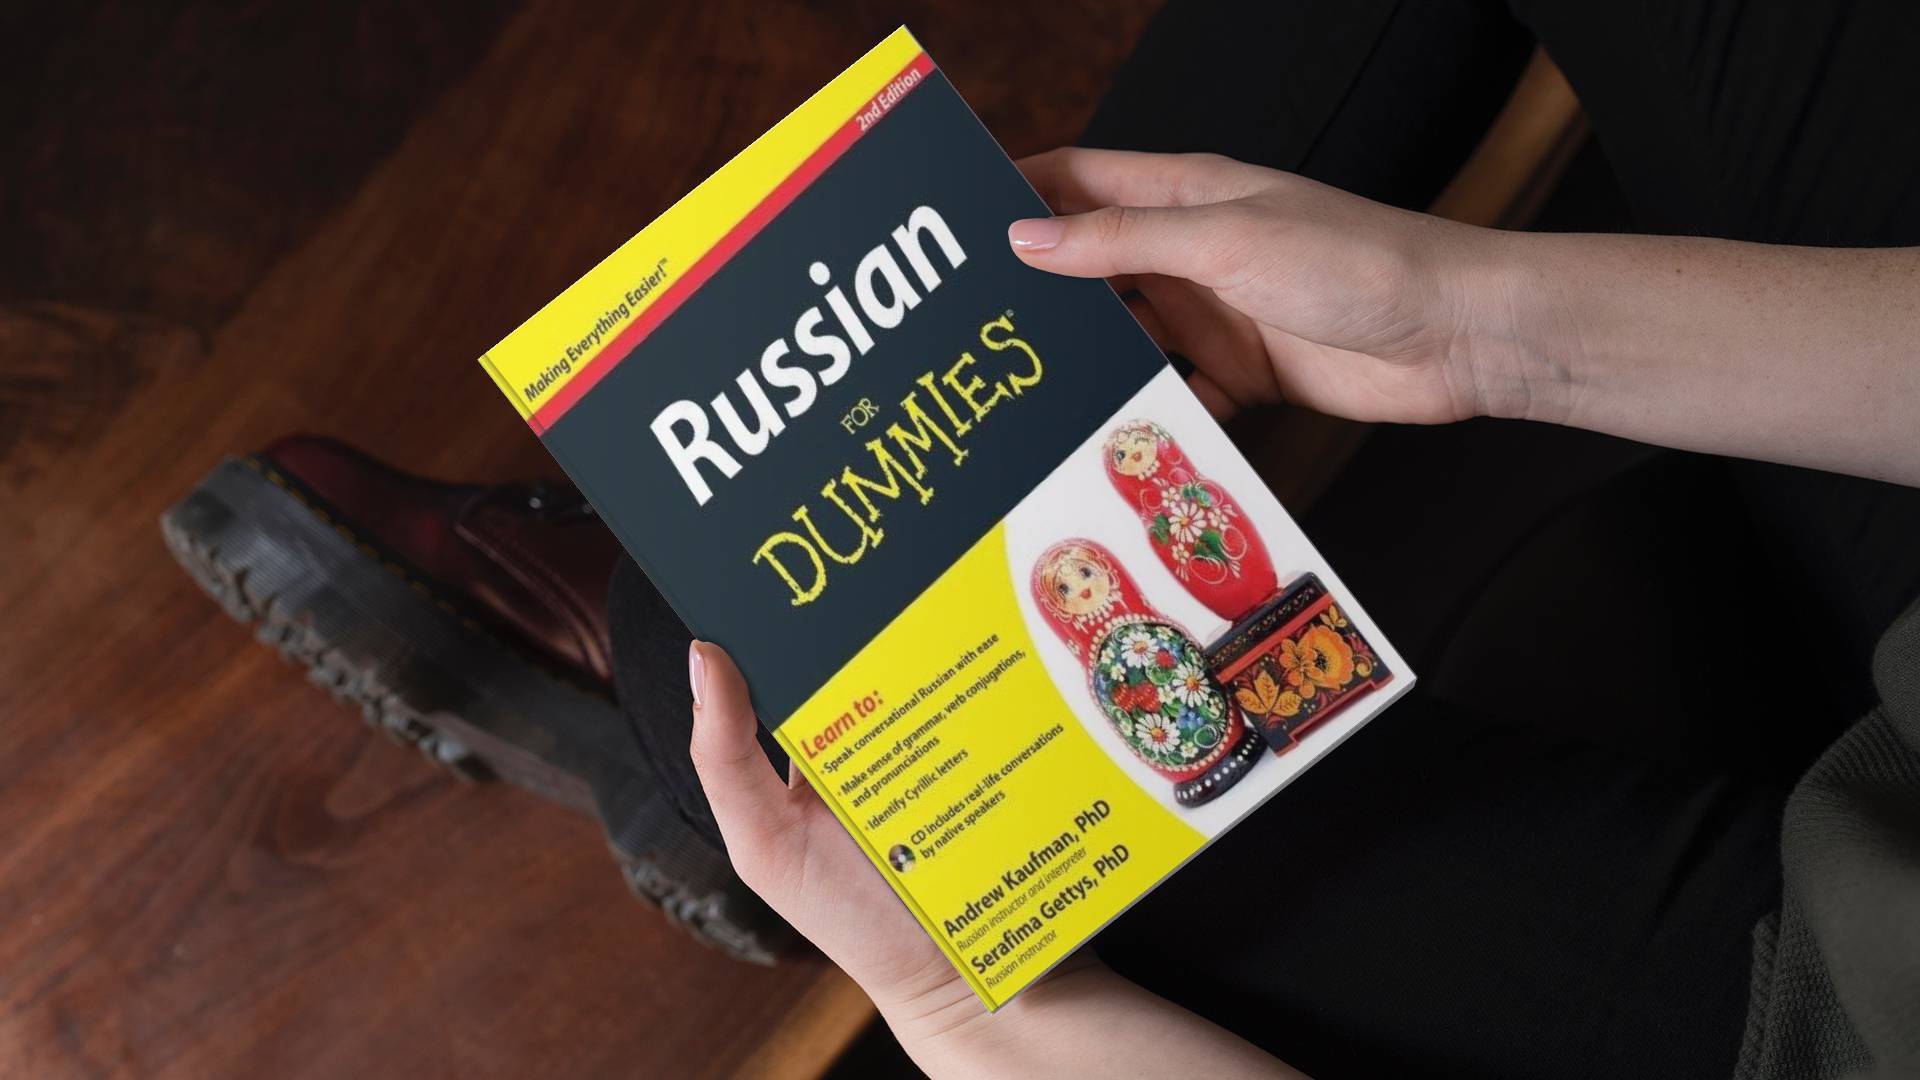 خرید کتاب زبان روسی | راشن فور دامیز ویرایش دوم | Russian For Dummies 2nd Edition